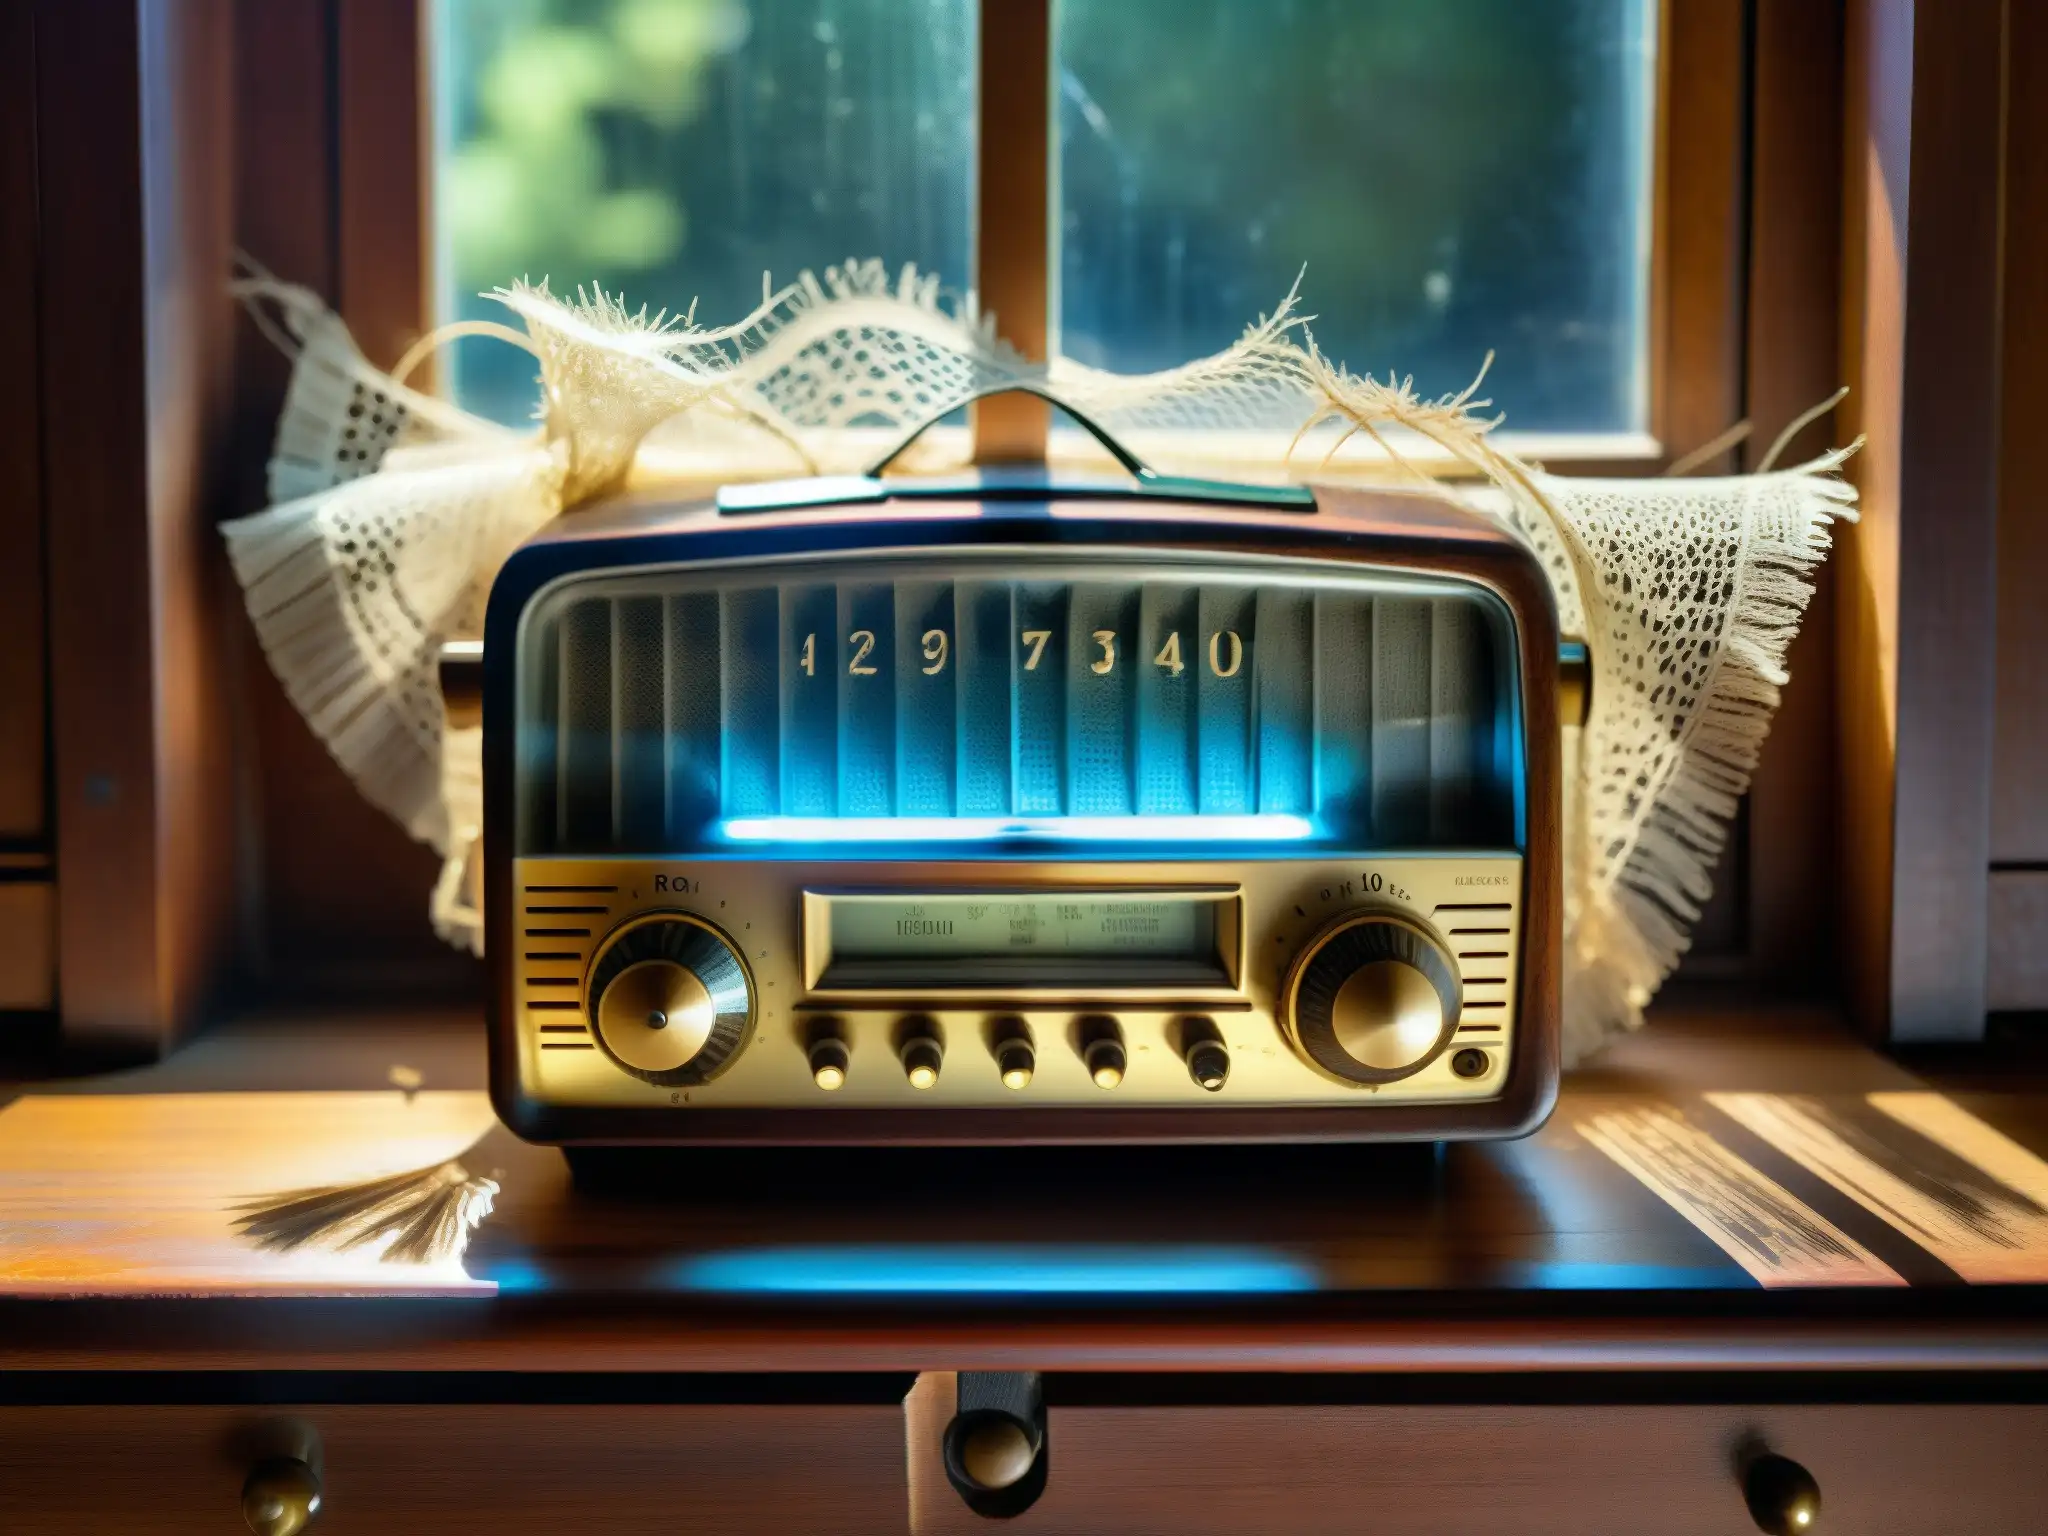 Imagen de un antiguo radio polvoriento iluminado por una tenue luz, rodeado de telarañas en una mesa de madera, evocando misterio y nostalgia